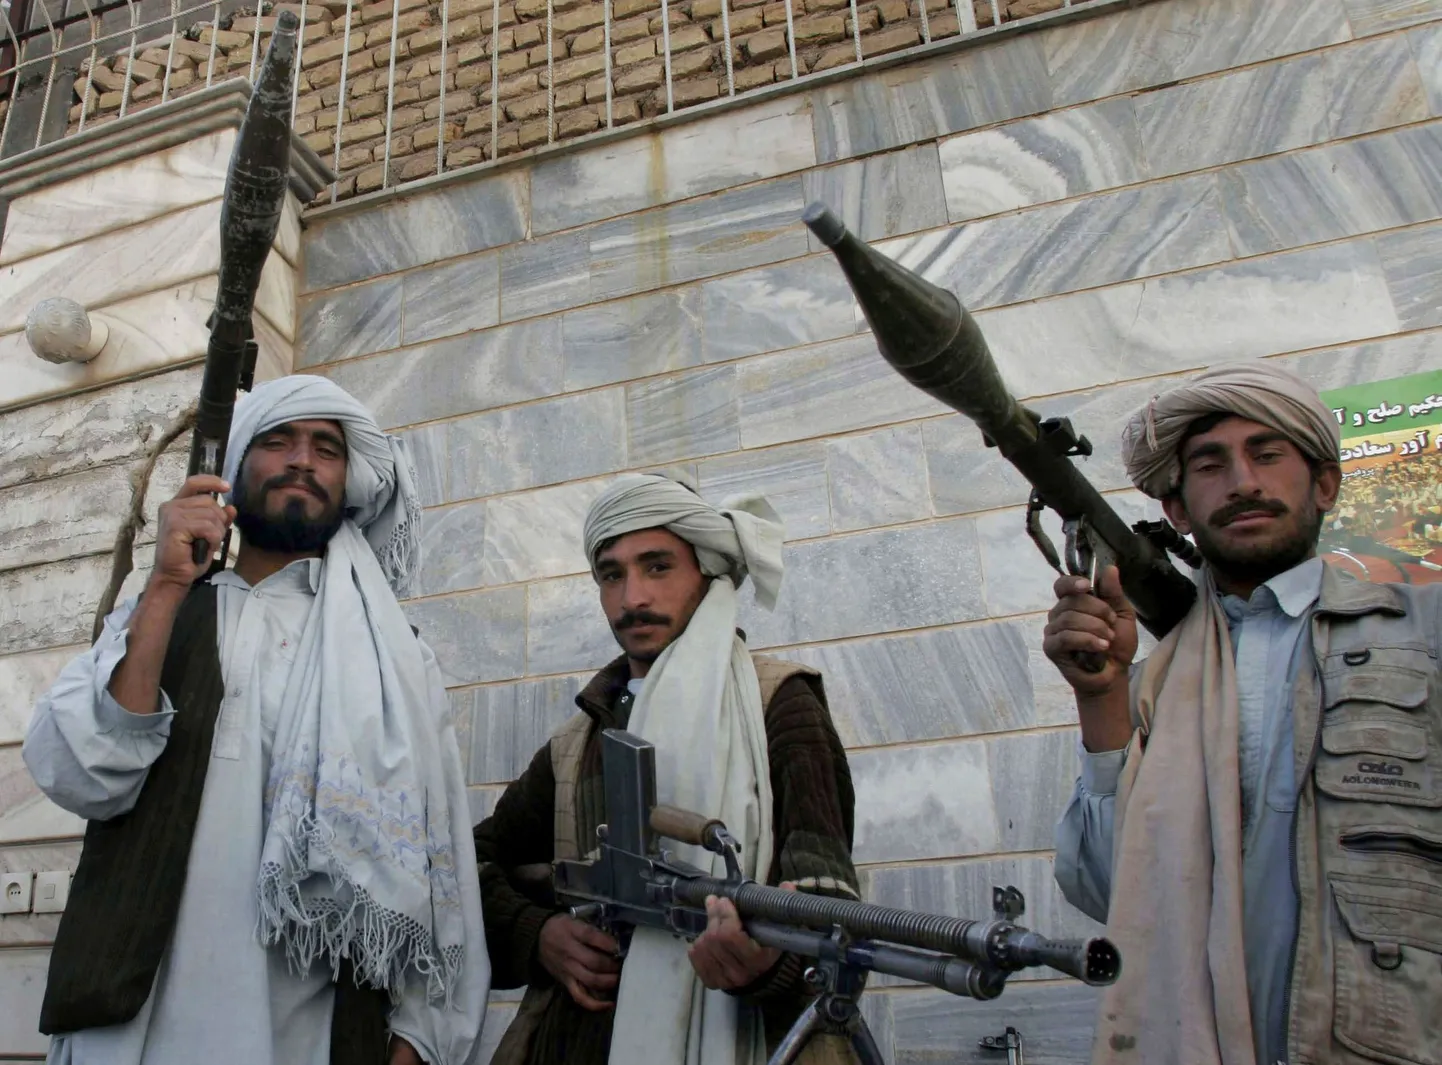 Talibani endised võitlejad poseerimas relvadega tseremoonial, kus nad loovutasid need rahu märgiks keskvalitsusele.